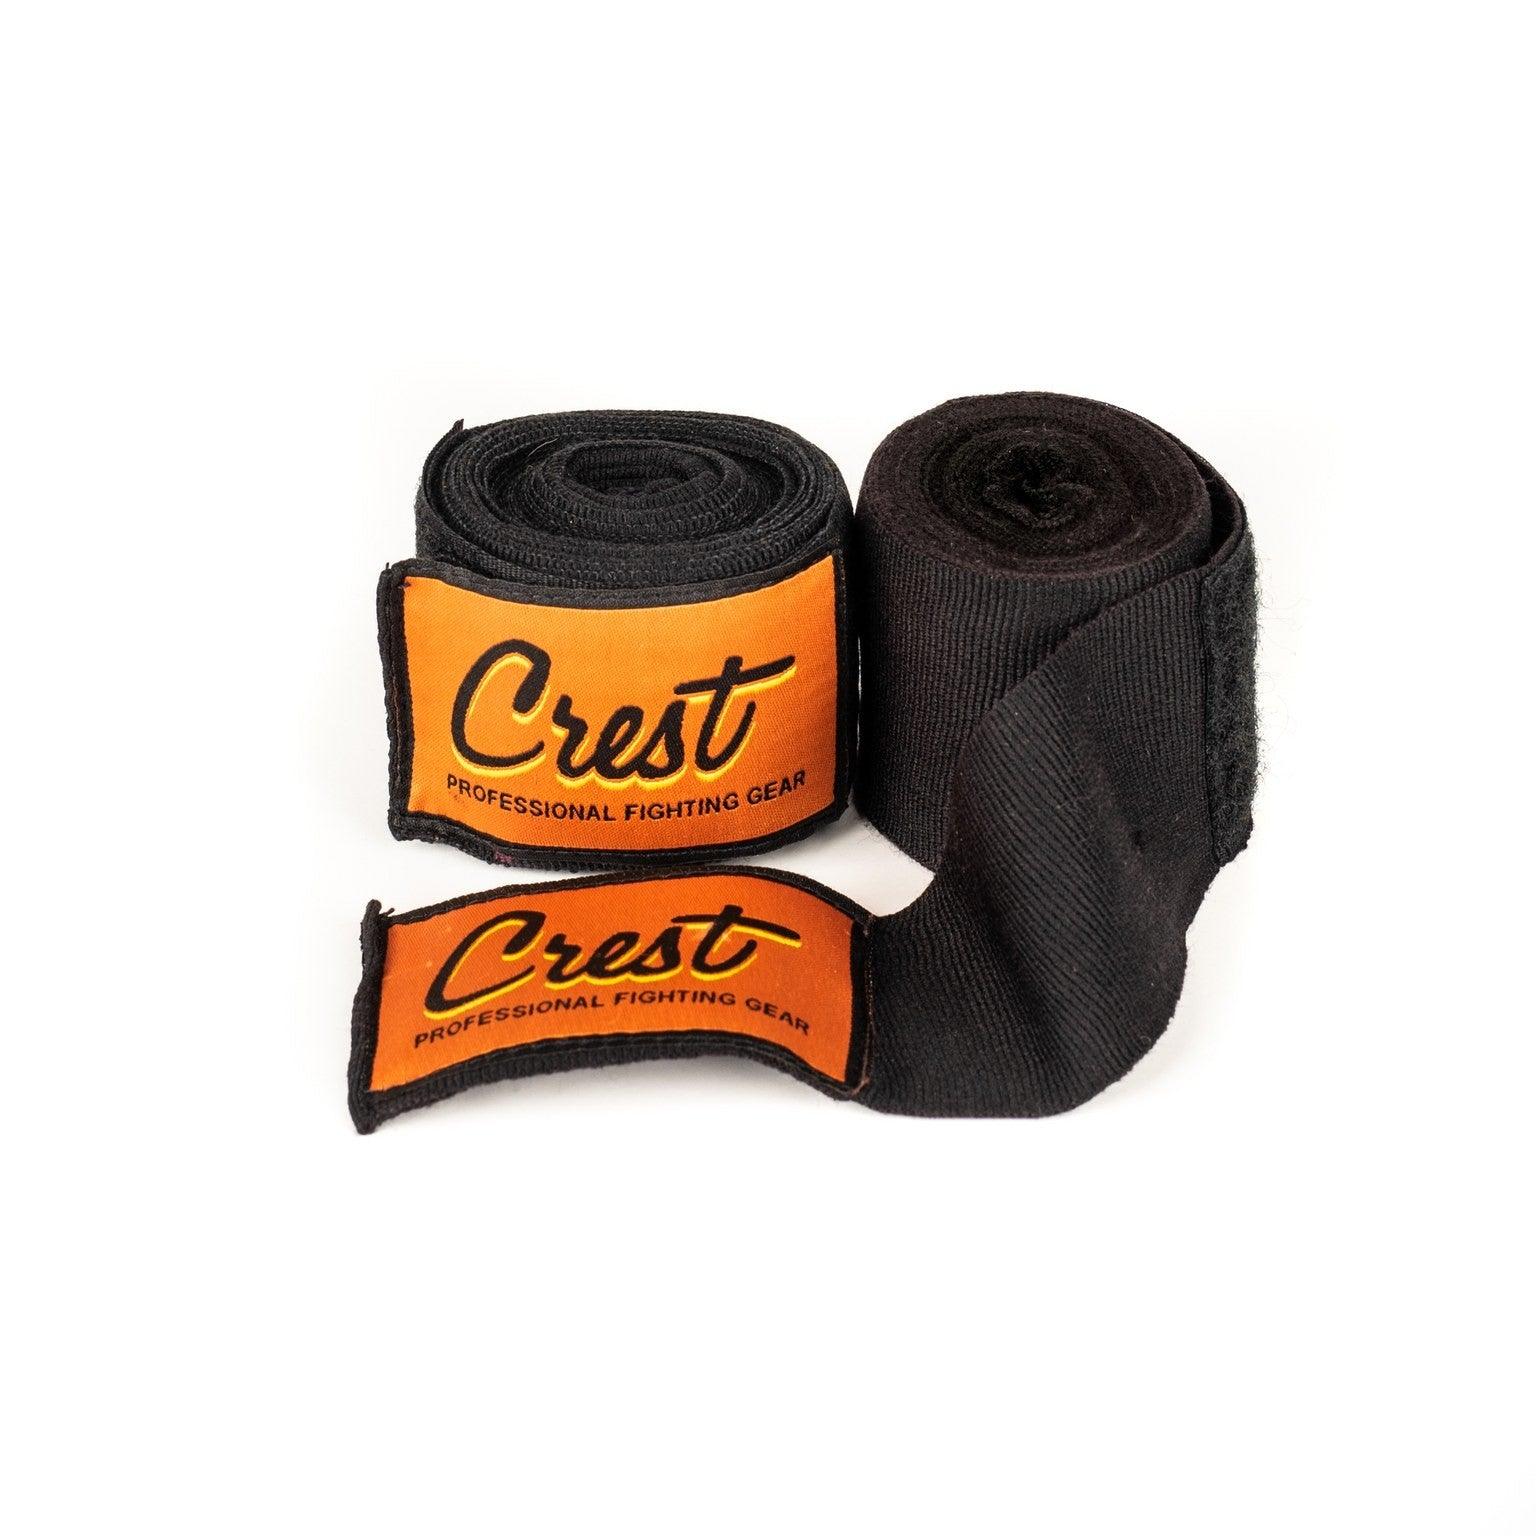 Hand wraps (cotton) - Crest - PFG